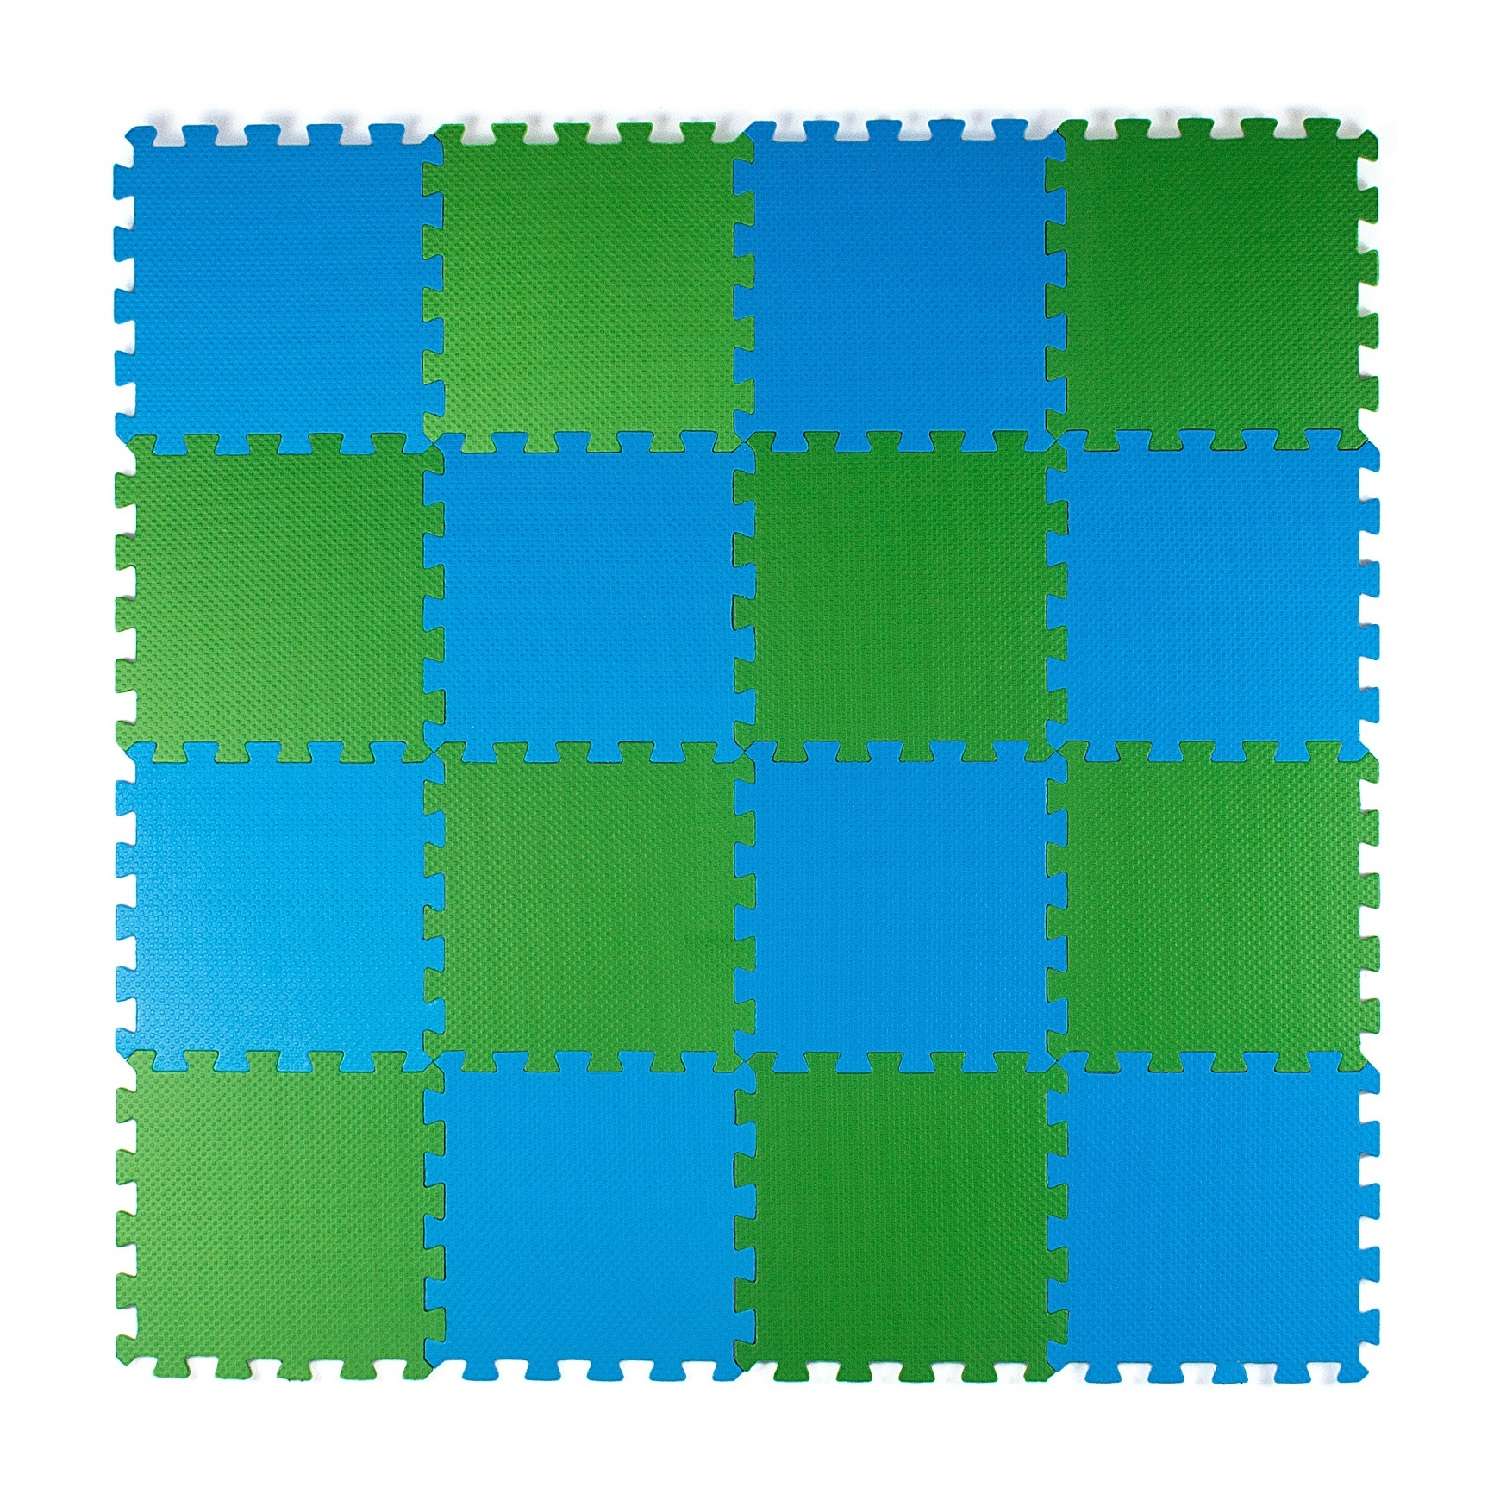 Развивающий детский коврик Eco cover игровой для ползания мягкий пол сине-зеленый 25х25 - фото 2